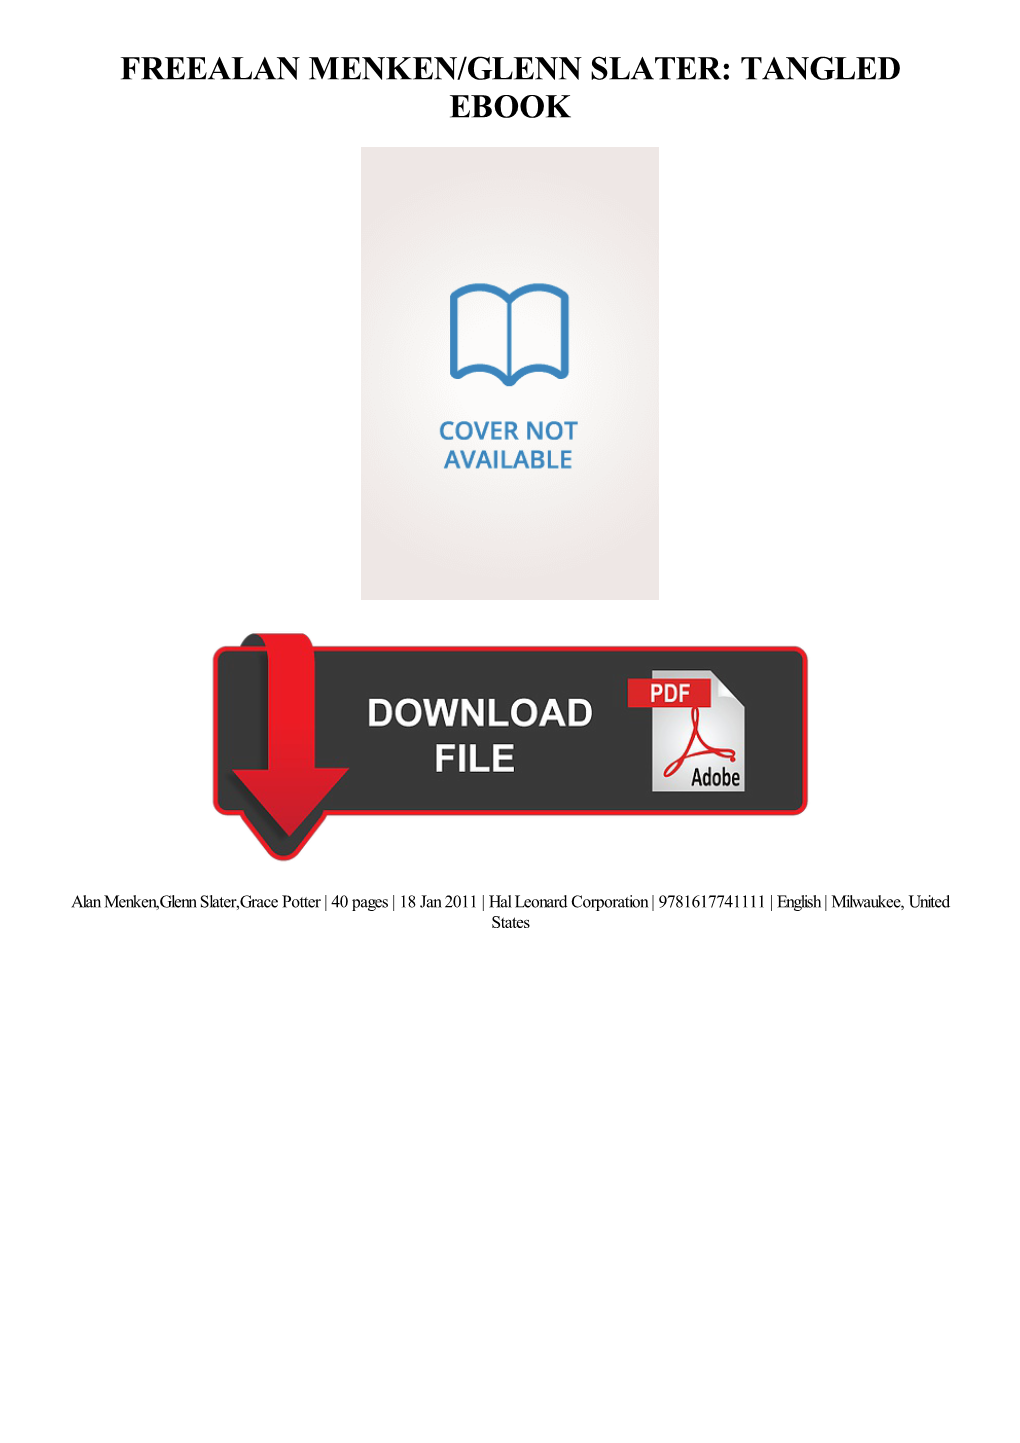 Alan Menken/Glenn Slater: Tangled Free Ebook